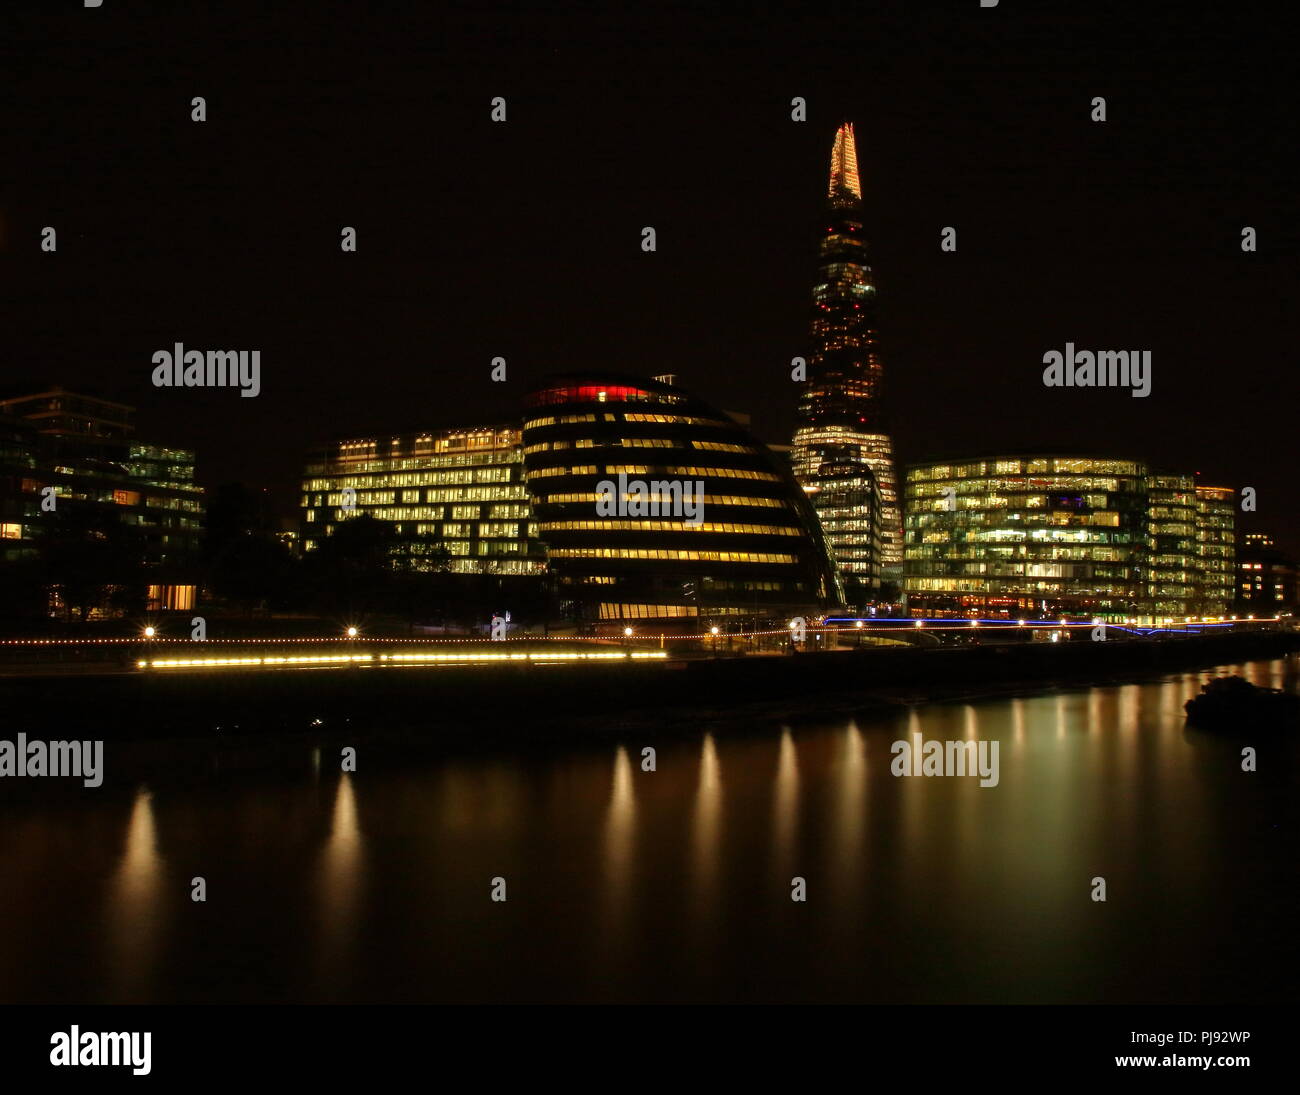 Skyline notturno, paesaggio di Londra, Regno Unito (Gran Bretagna), architettura moderna, terrapieno, il fiume Tamigi e luci della città, riflessi nell'acqua. Foto Stock